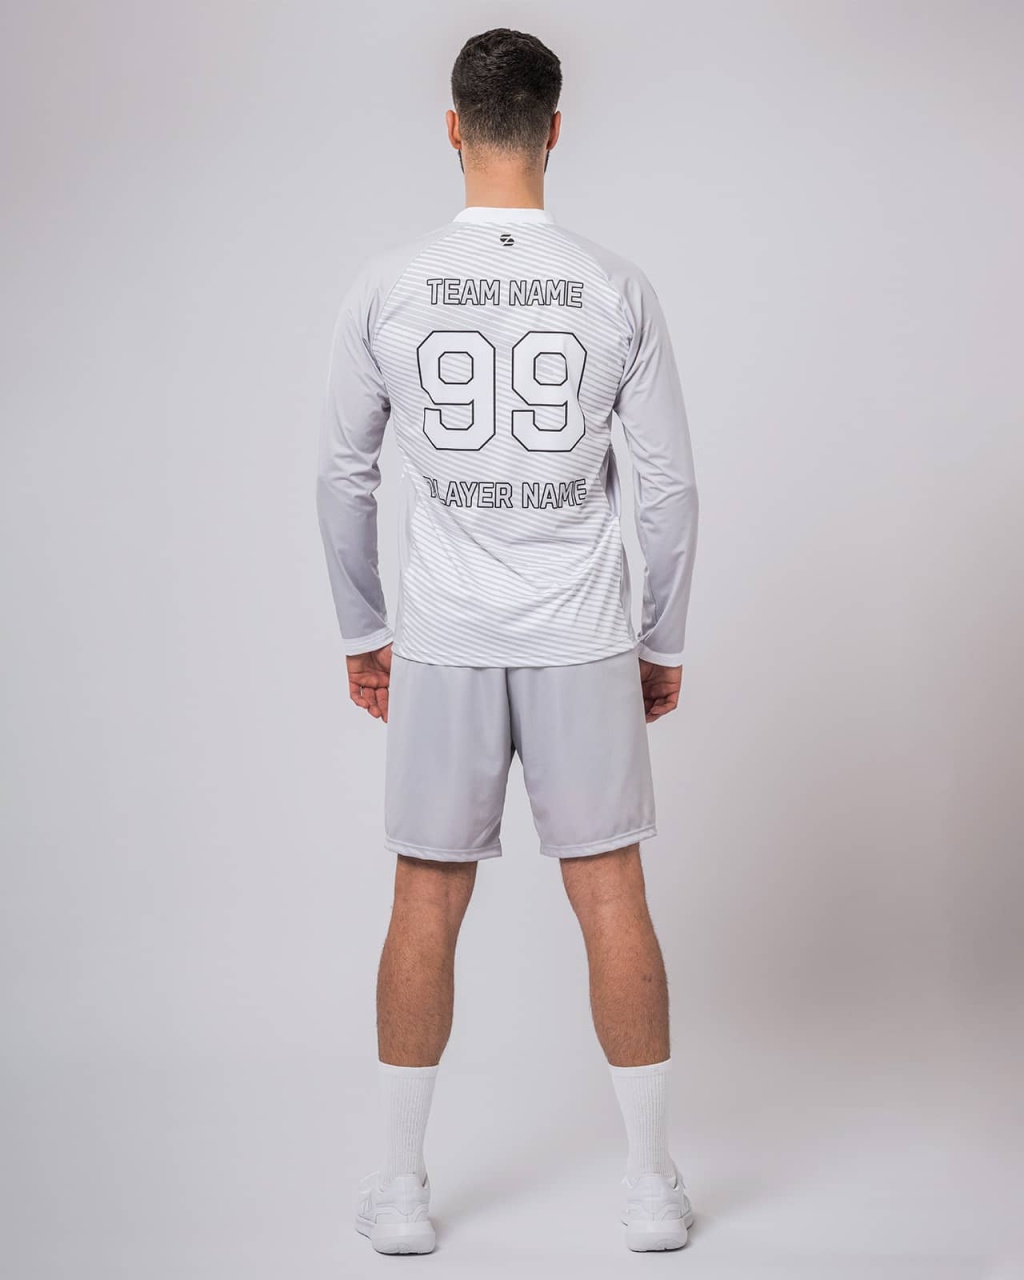 Skjern men's long-sleeved handball jersey